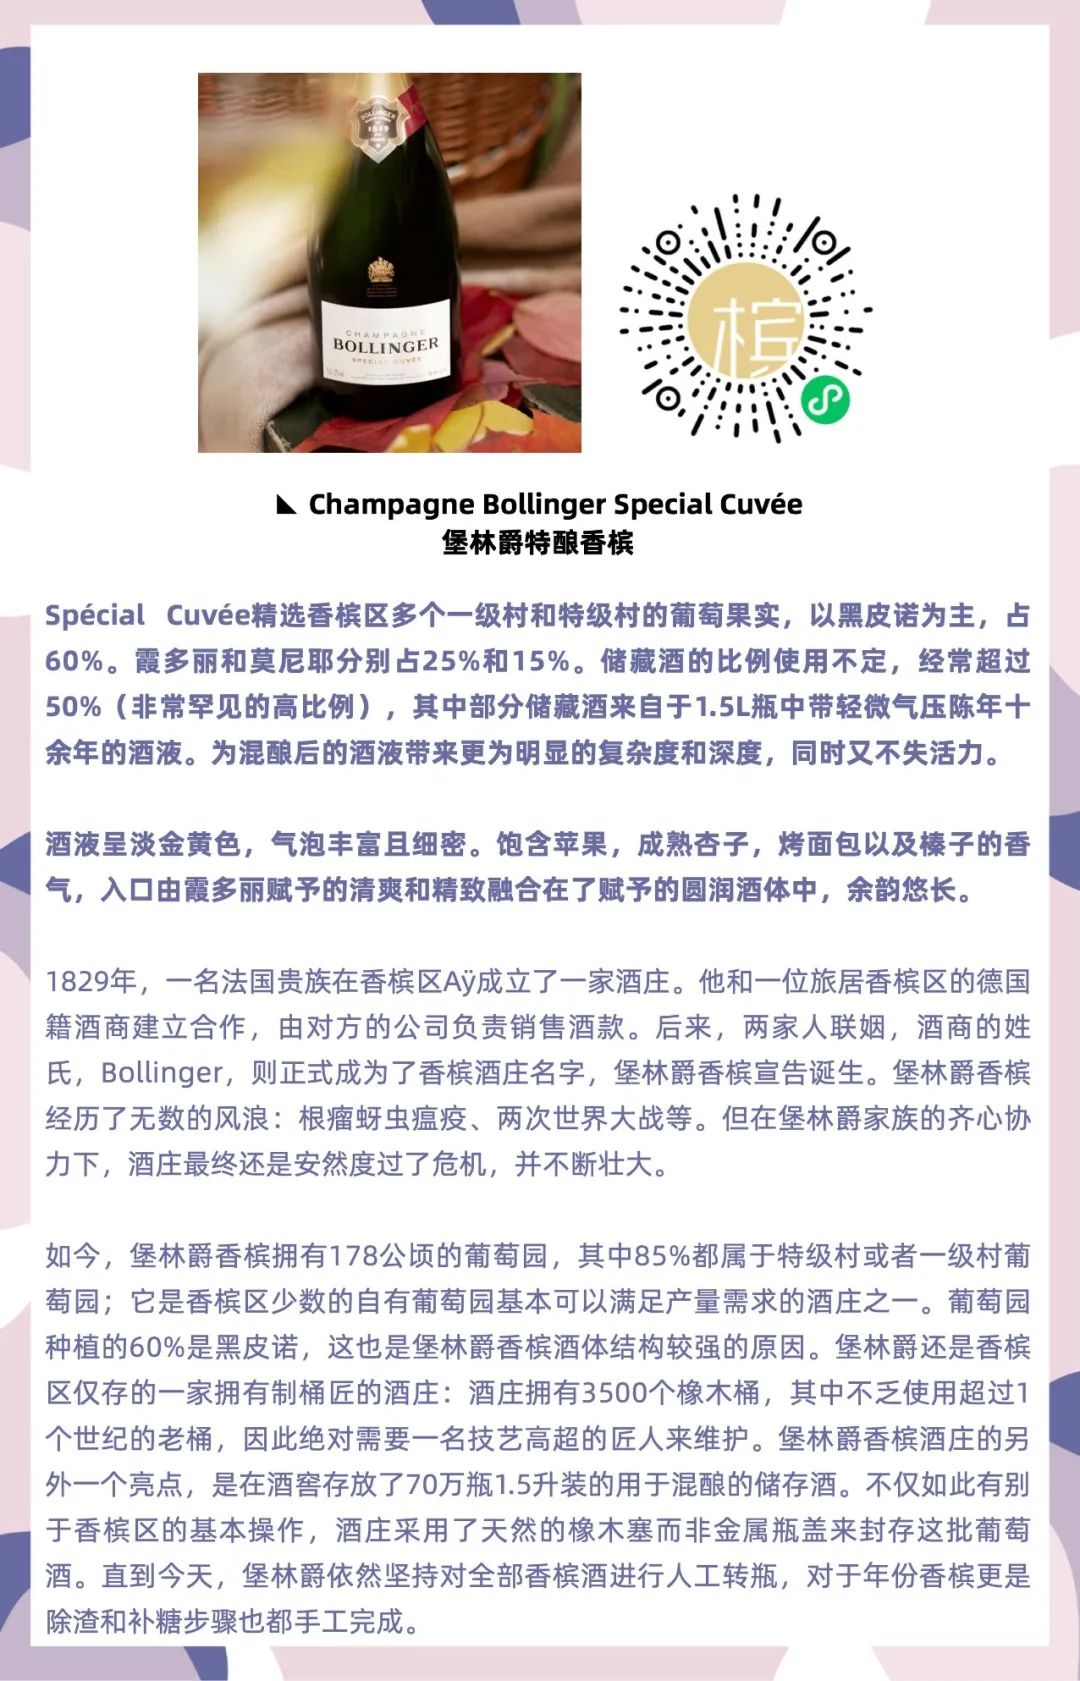 香槟品鉴会 | 广州 K11 奇遇酒馆 · 喝酒攻略